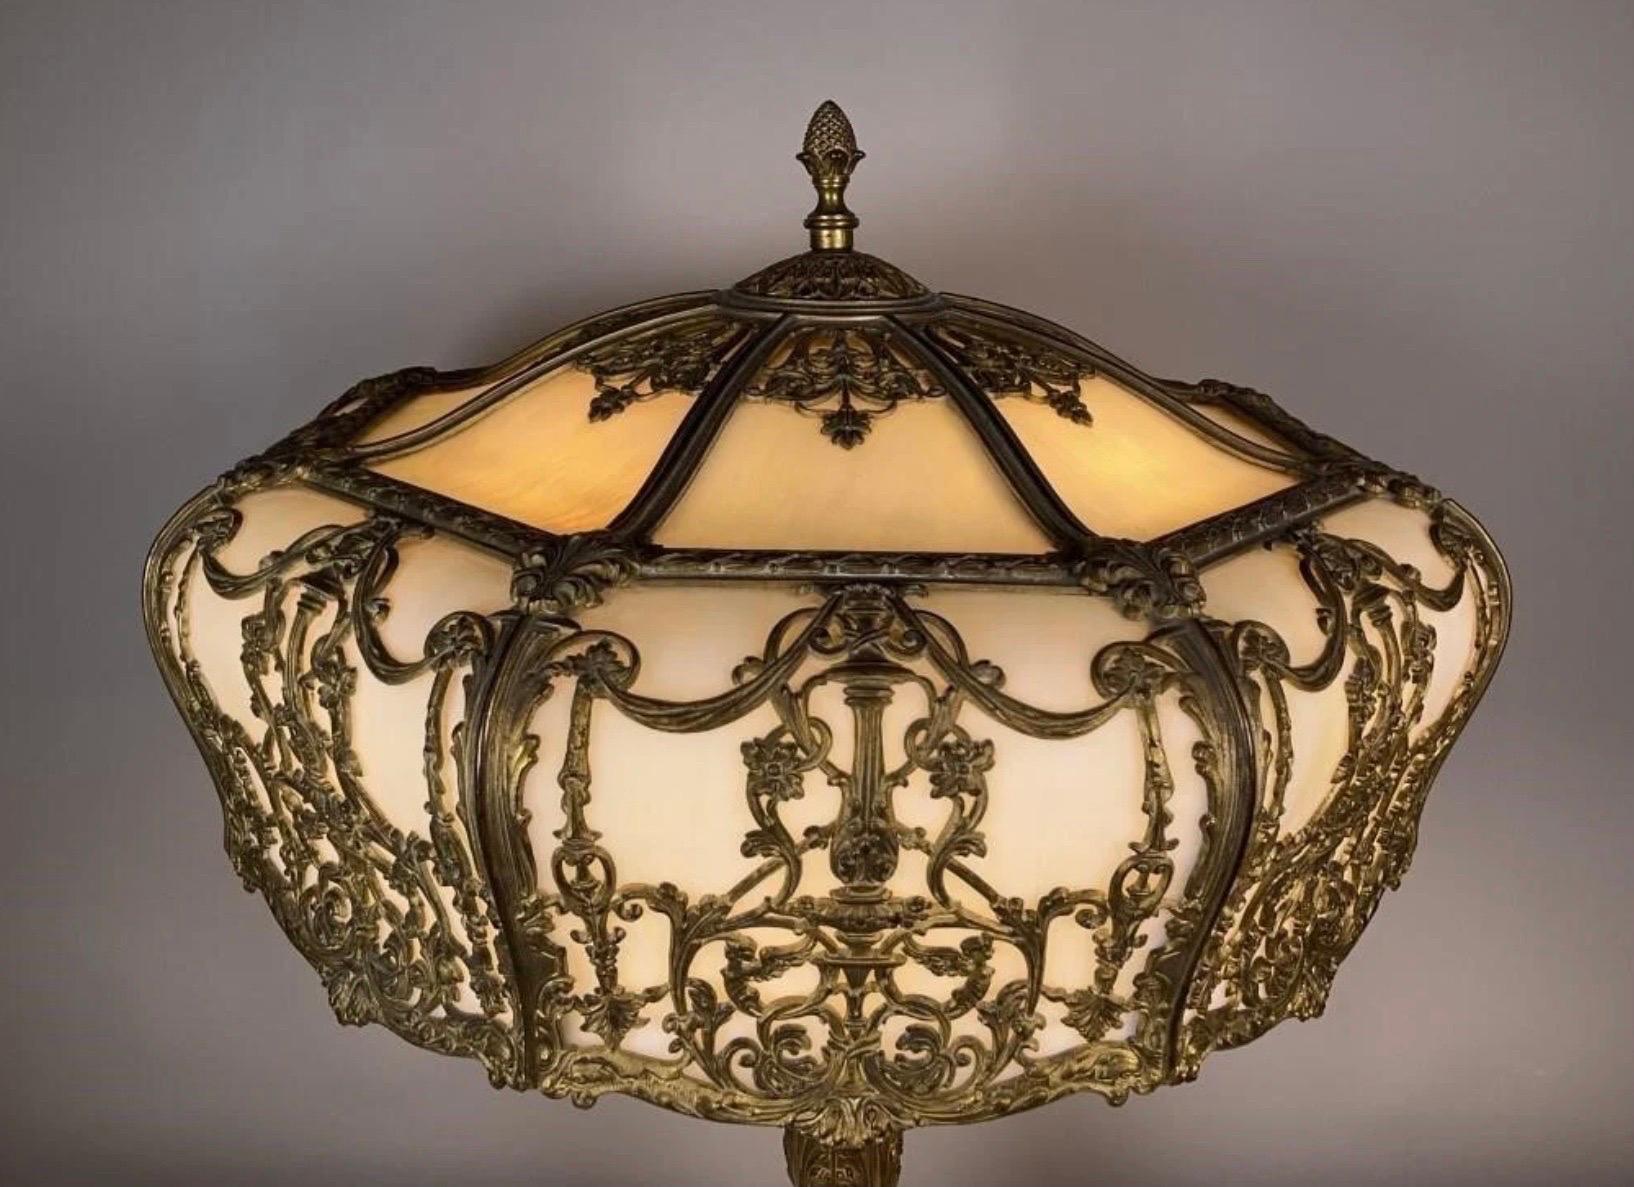 Une grande lampe de table en bronze doré et verre courbé, abat-jour de 24 pouces de diamètre avec base originale assortie. Le verre est d'un blanc nacré avec un cadre et une base en bronze. Qualité exceptionnelle, soit Bradly et Hubbard ou E.F.